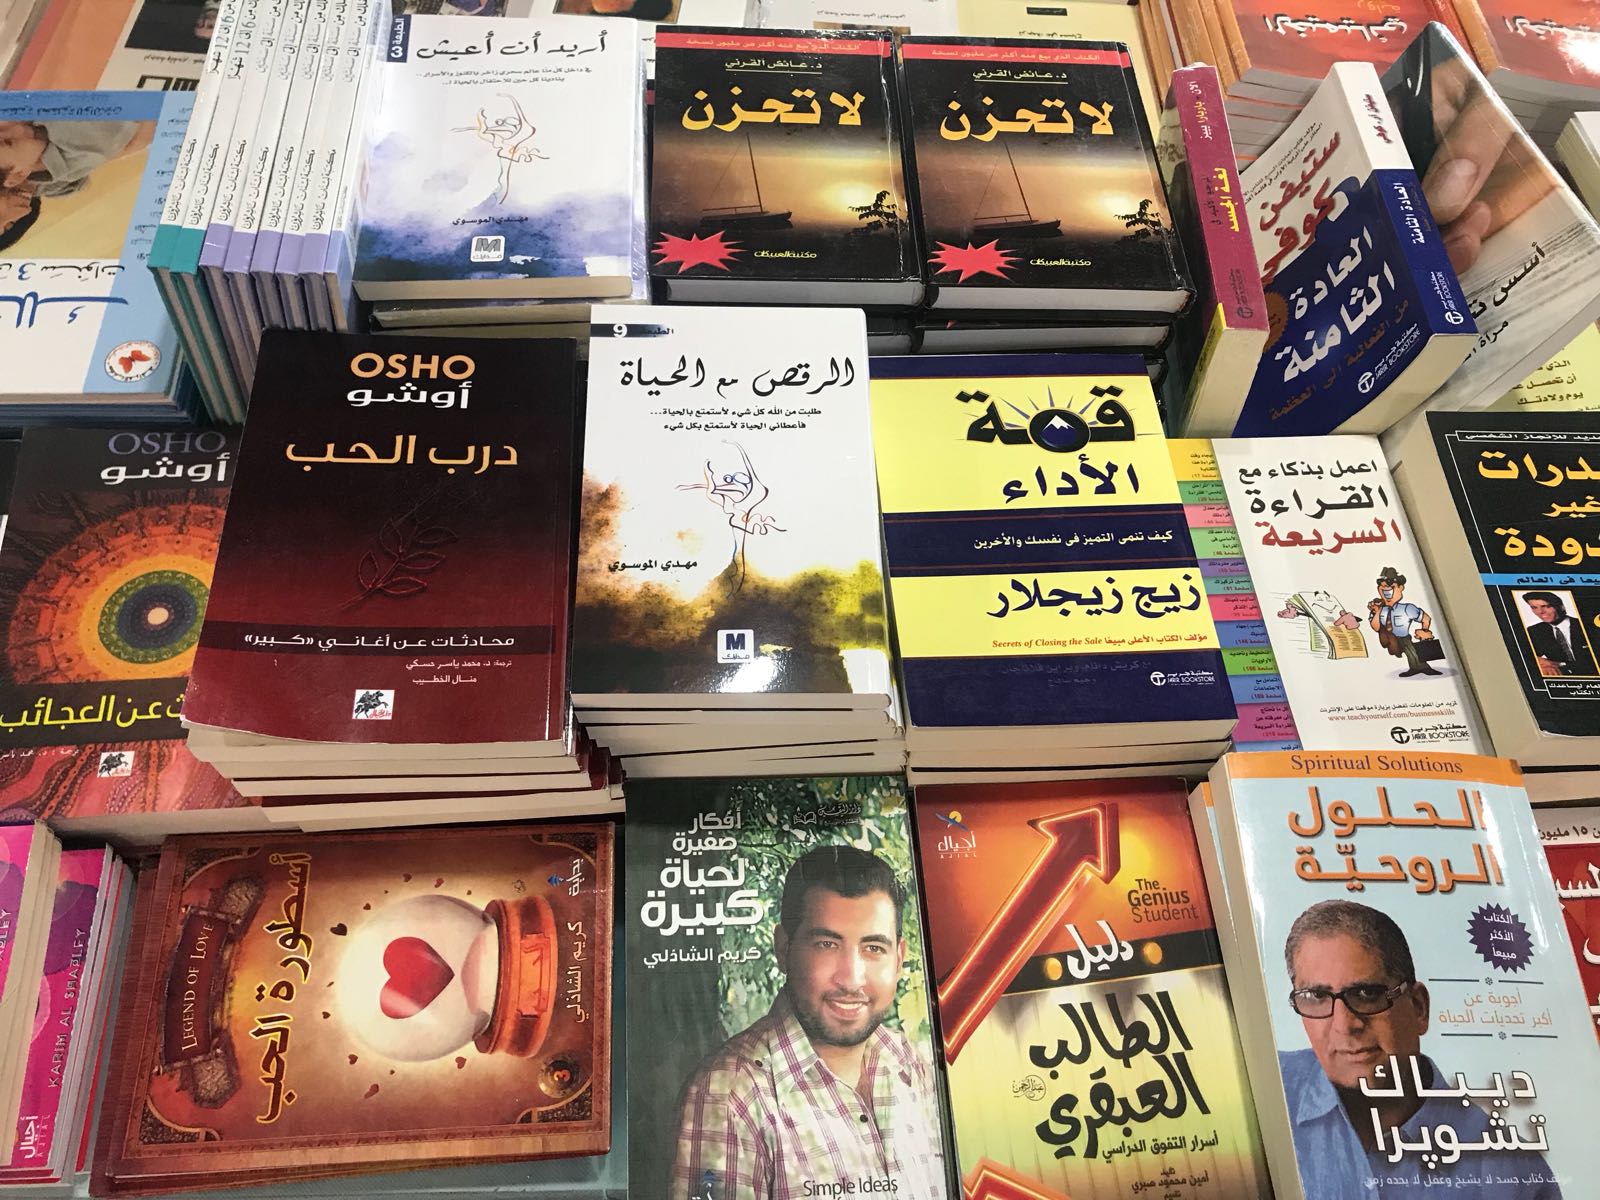 السبت سيفتتح اضخم معرض للكتاب في كفر قاسم